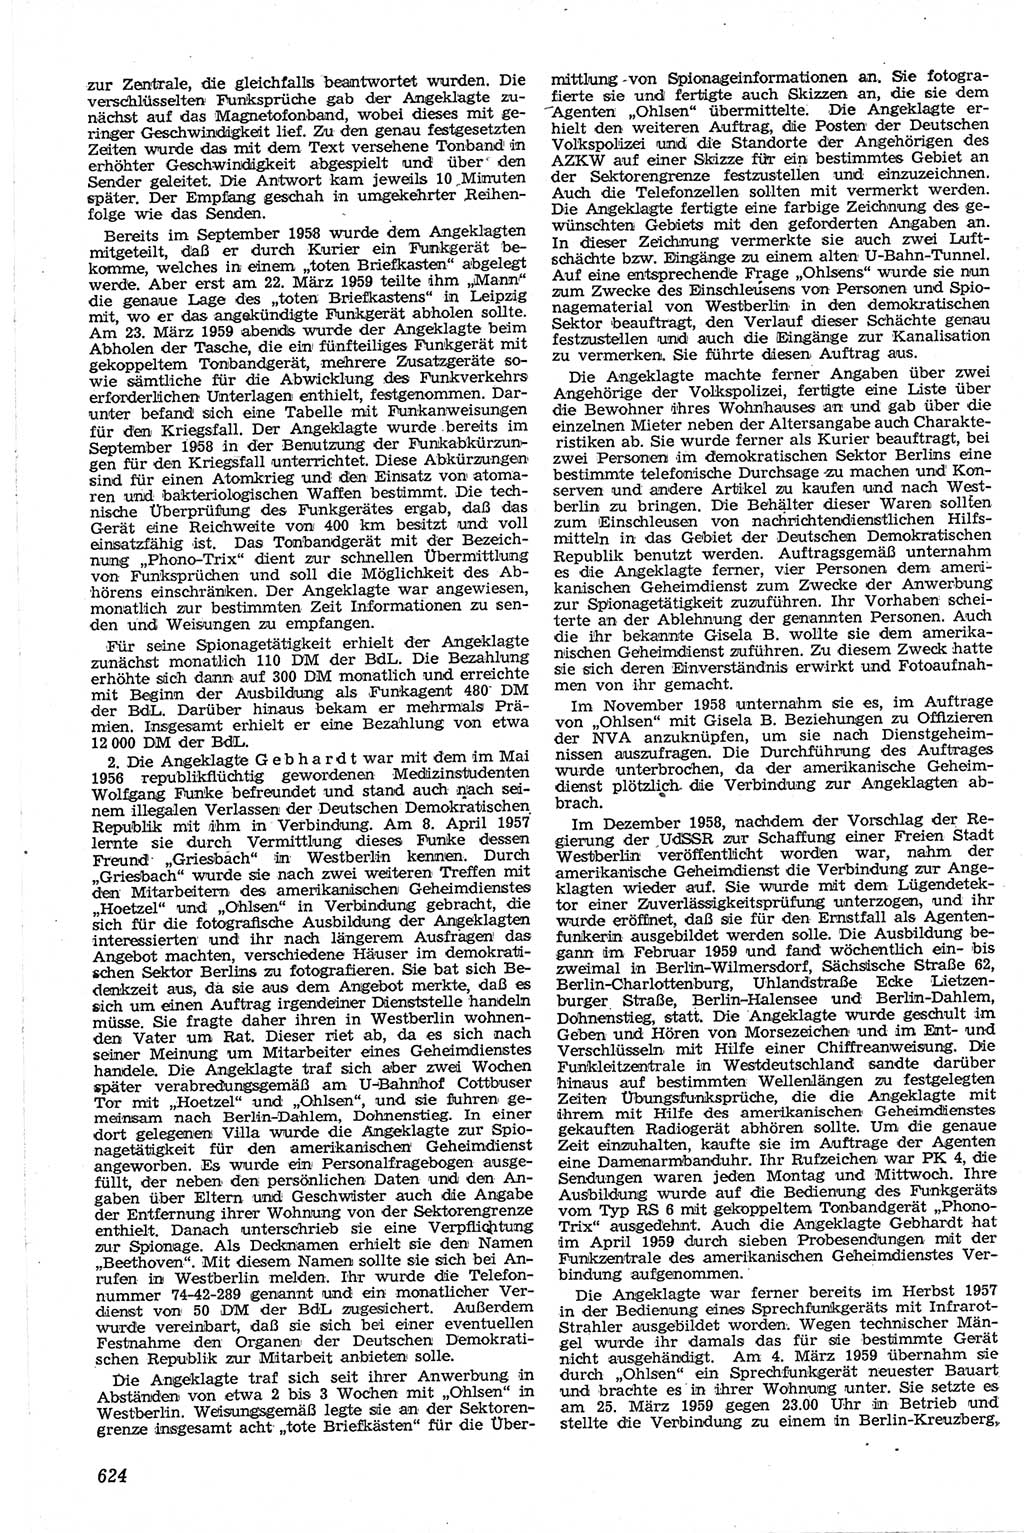 Neue Justiz (NJ), Zeitschrift für Recht und Rechtswissenschaft [Deutsche Demokratische Republik (DDR)], 13. Jahrgang 1959, Seite 624 (NJ DDR 1959, S. 624)